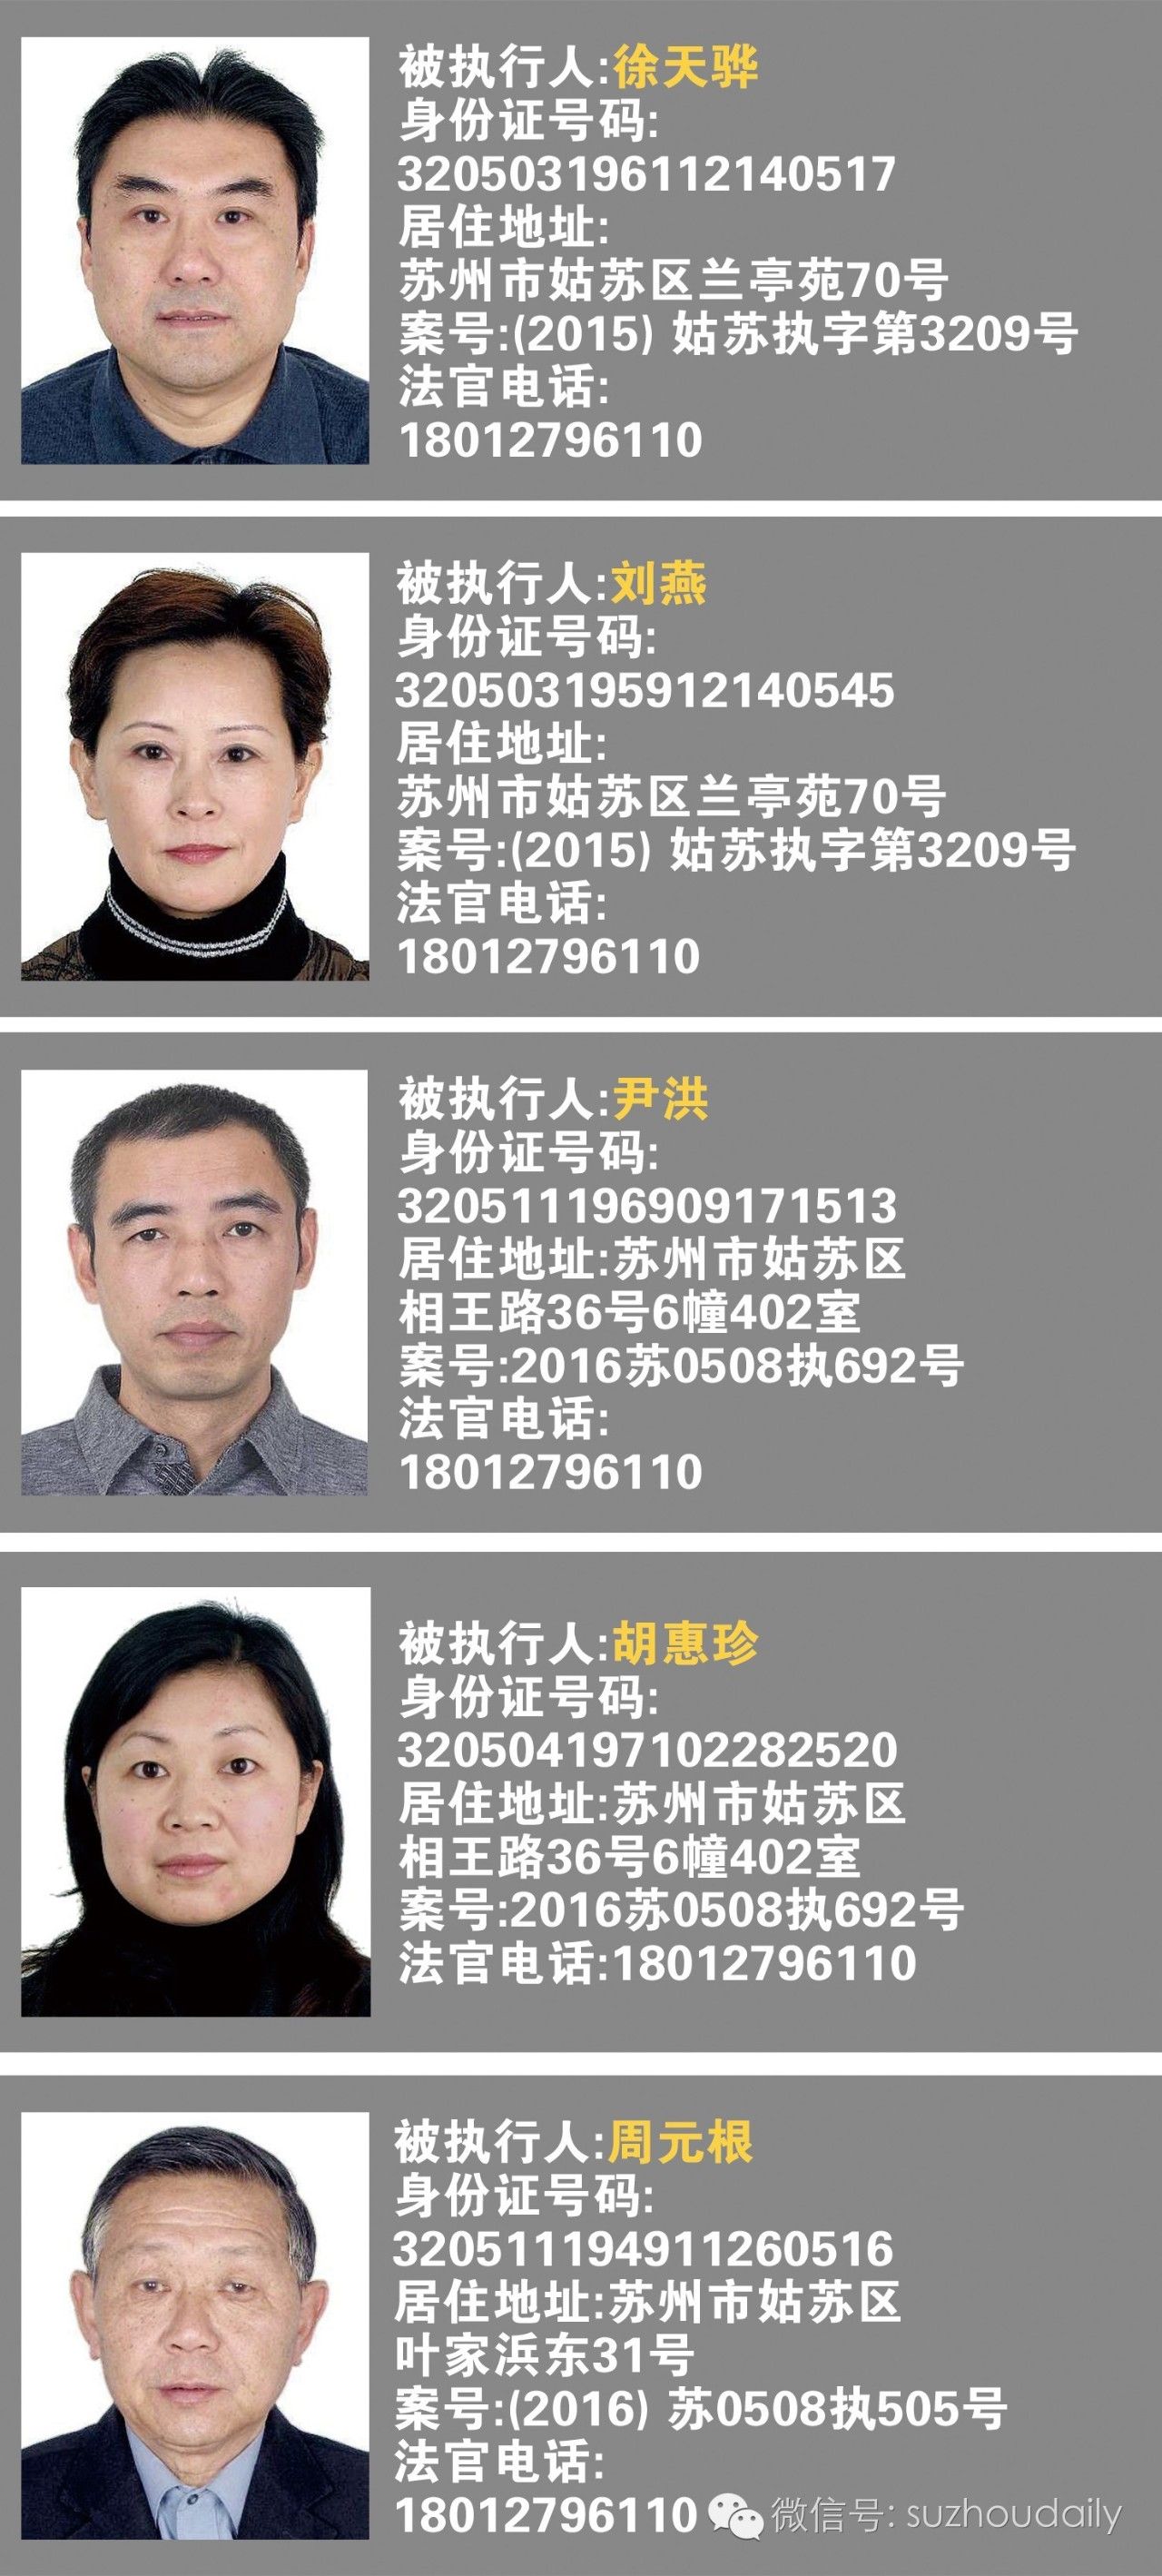 【老赖曝光台】(第三期) 苏州市中级人民法院公布失信被执行人名单